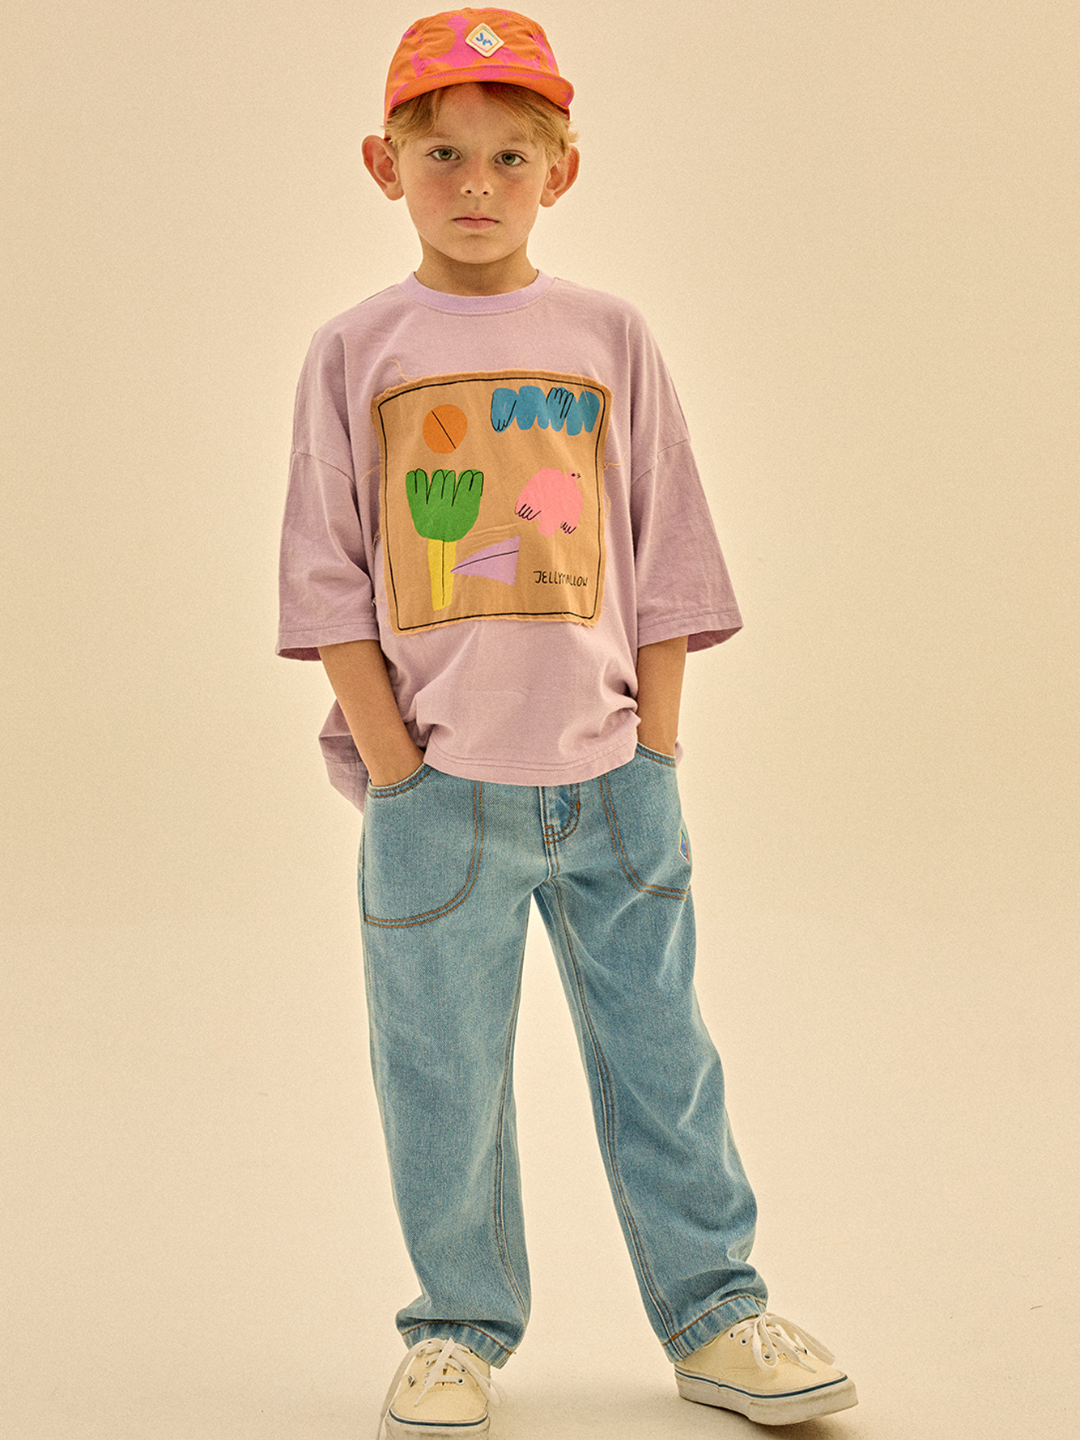 Child wearing Frame T-shirt